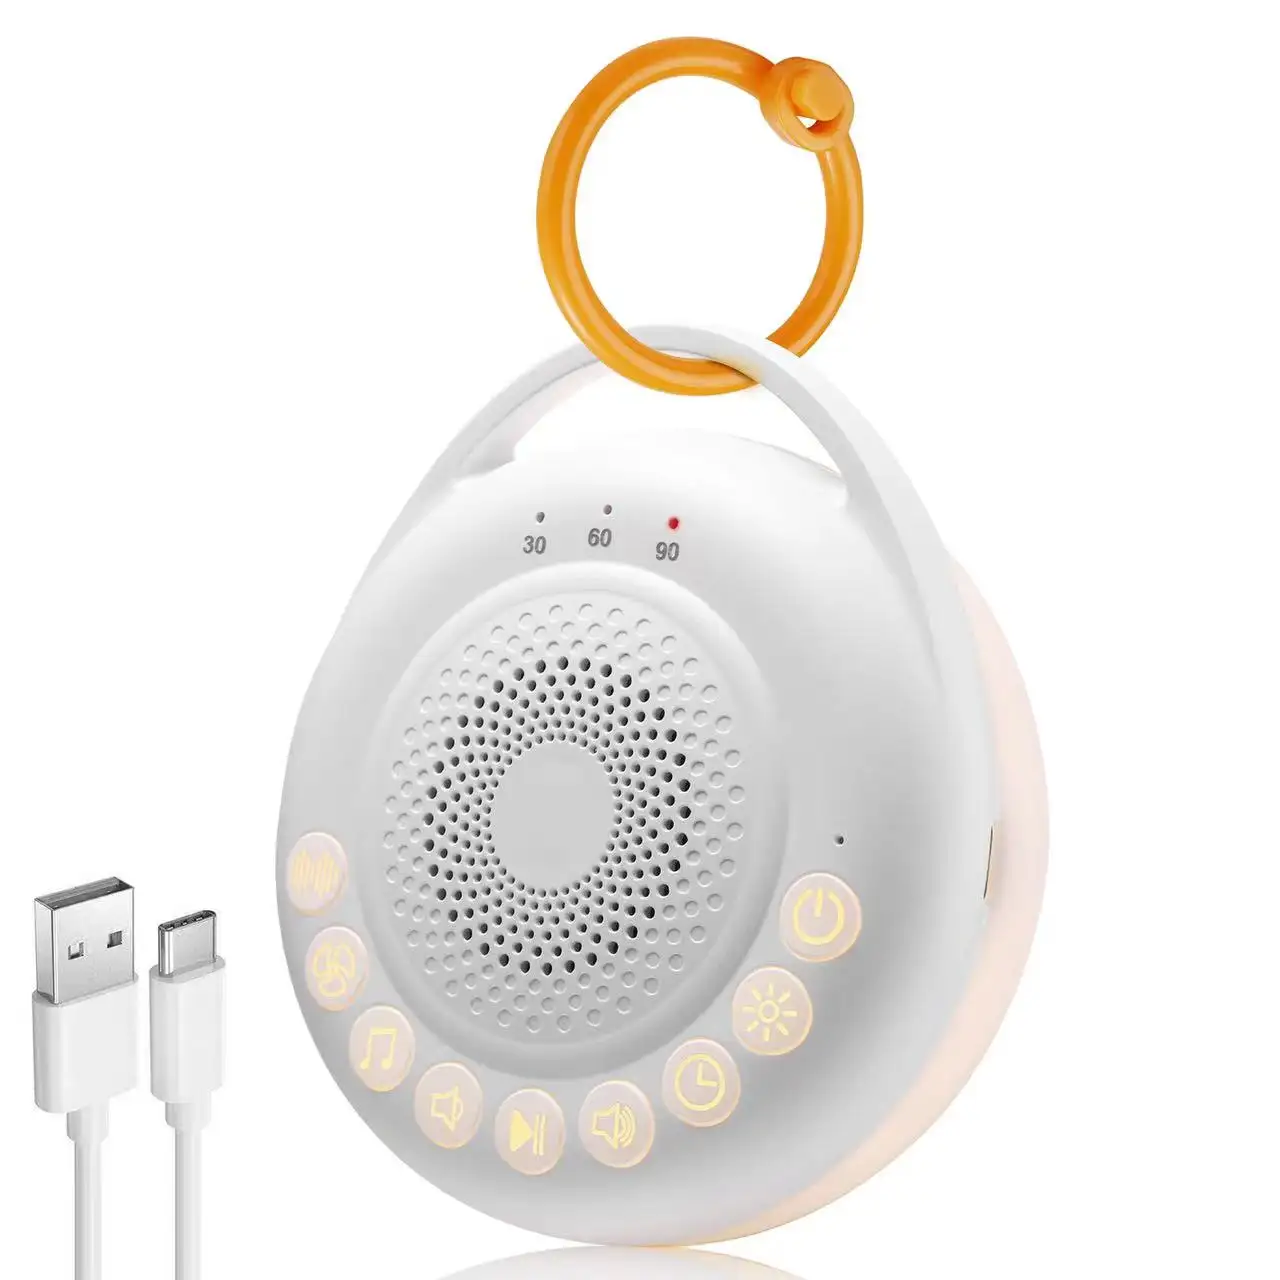 Sıcak satış bebek uyku makinesi taşınabilir 24 yüksek sadakat yatıştırıcı sesler için şarj edilebilir beyaz gürültü Fan uyku bebek gece lambası